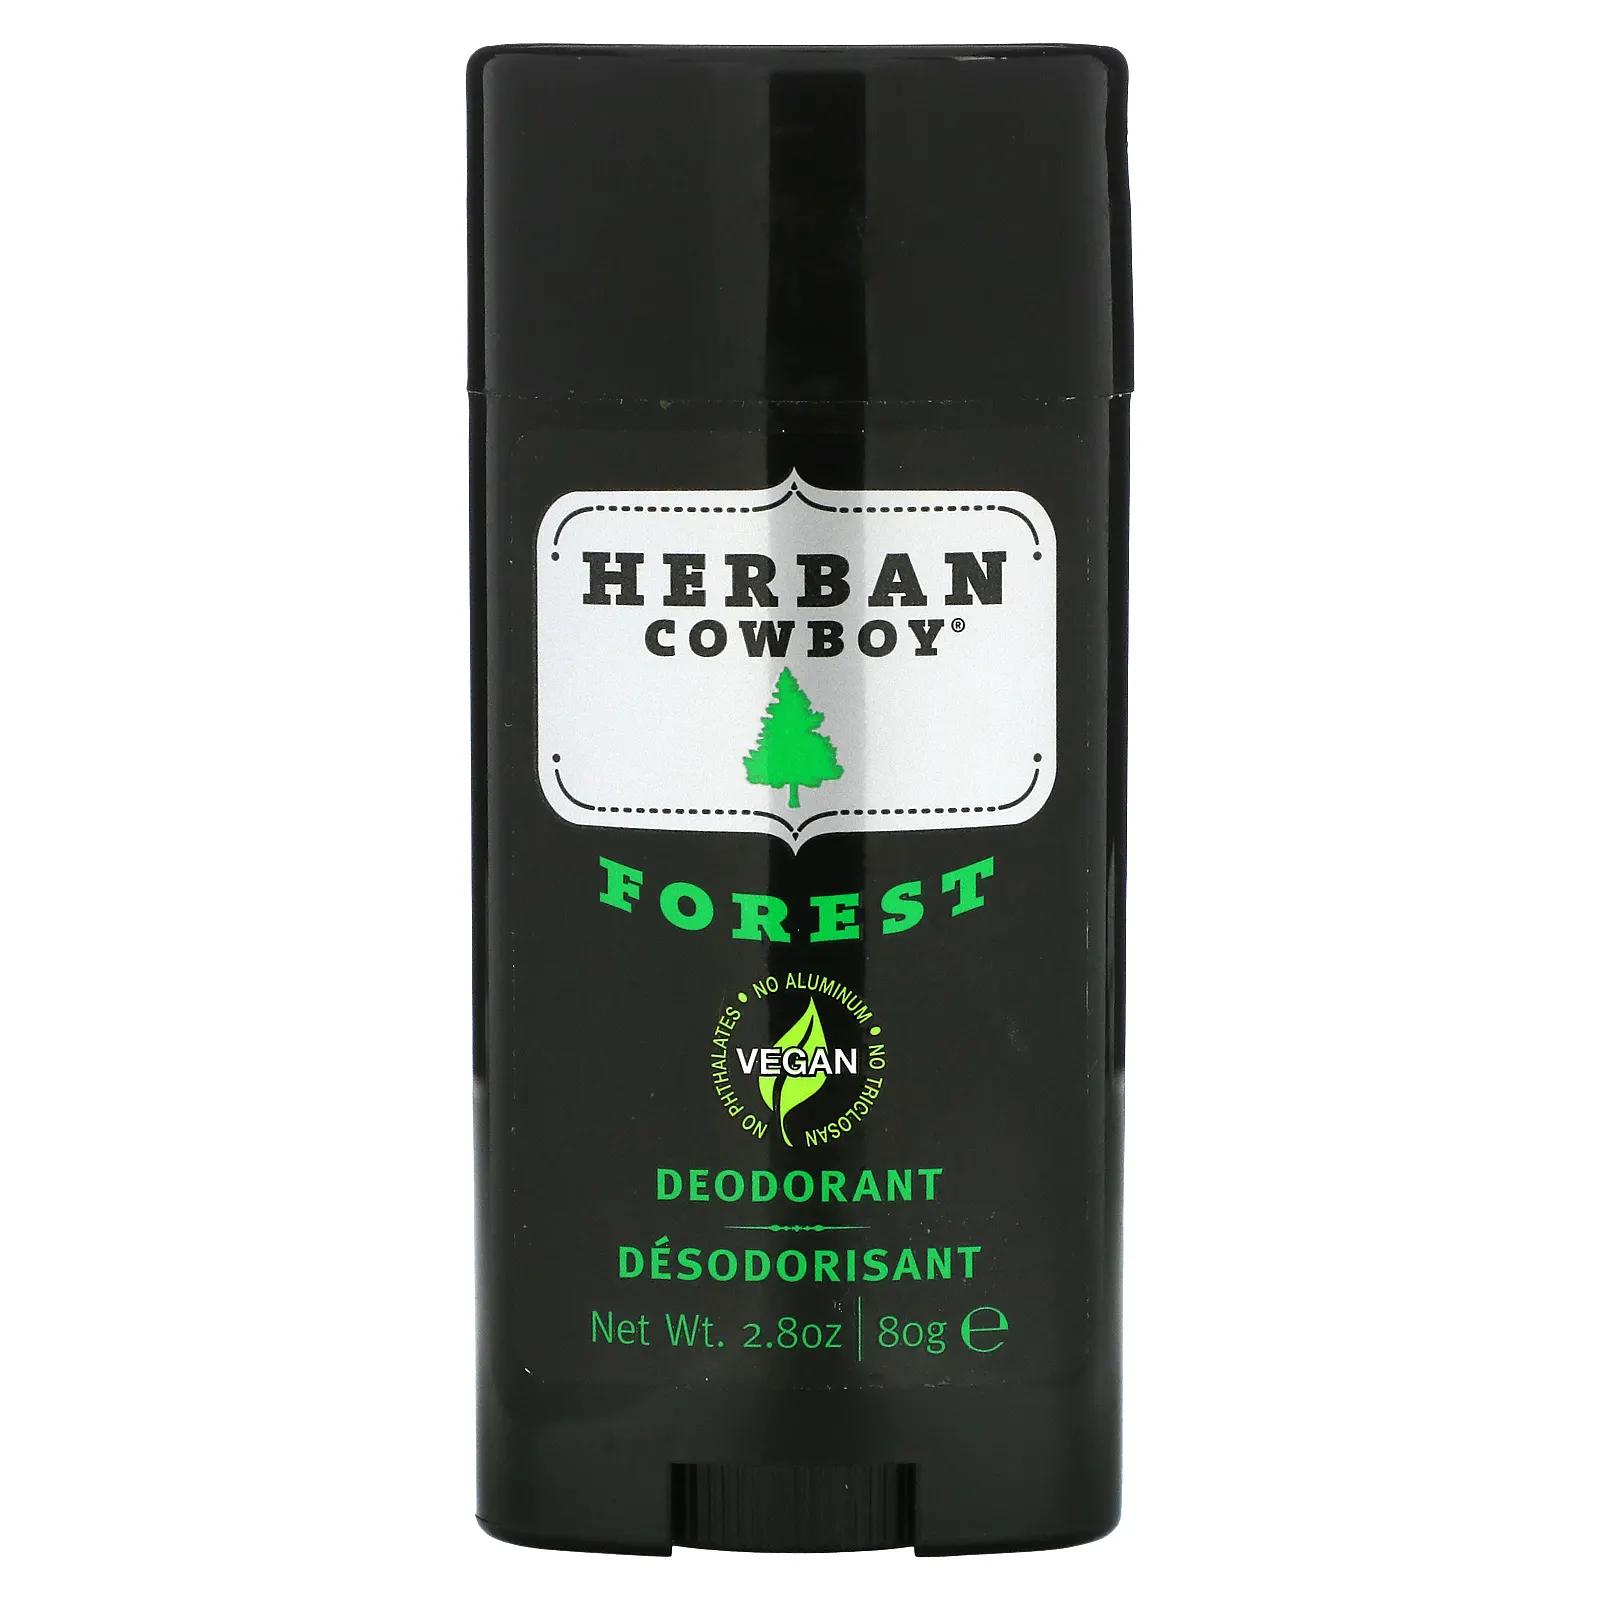 Herban Cowboy Forest дезодорант с максимальной защитой 80 г цена и фото